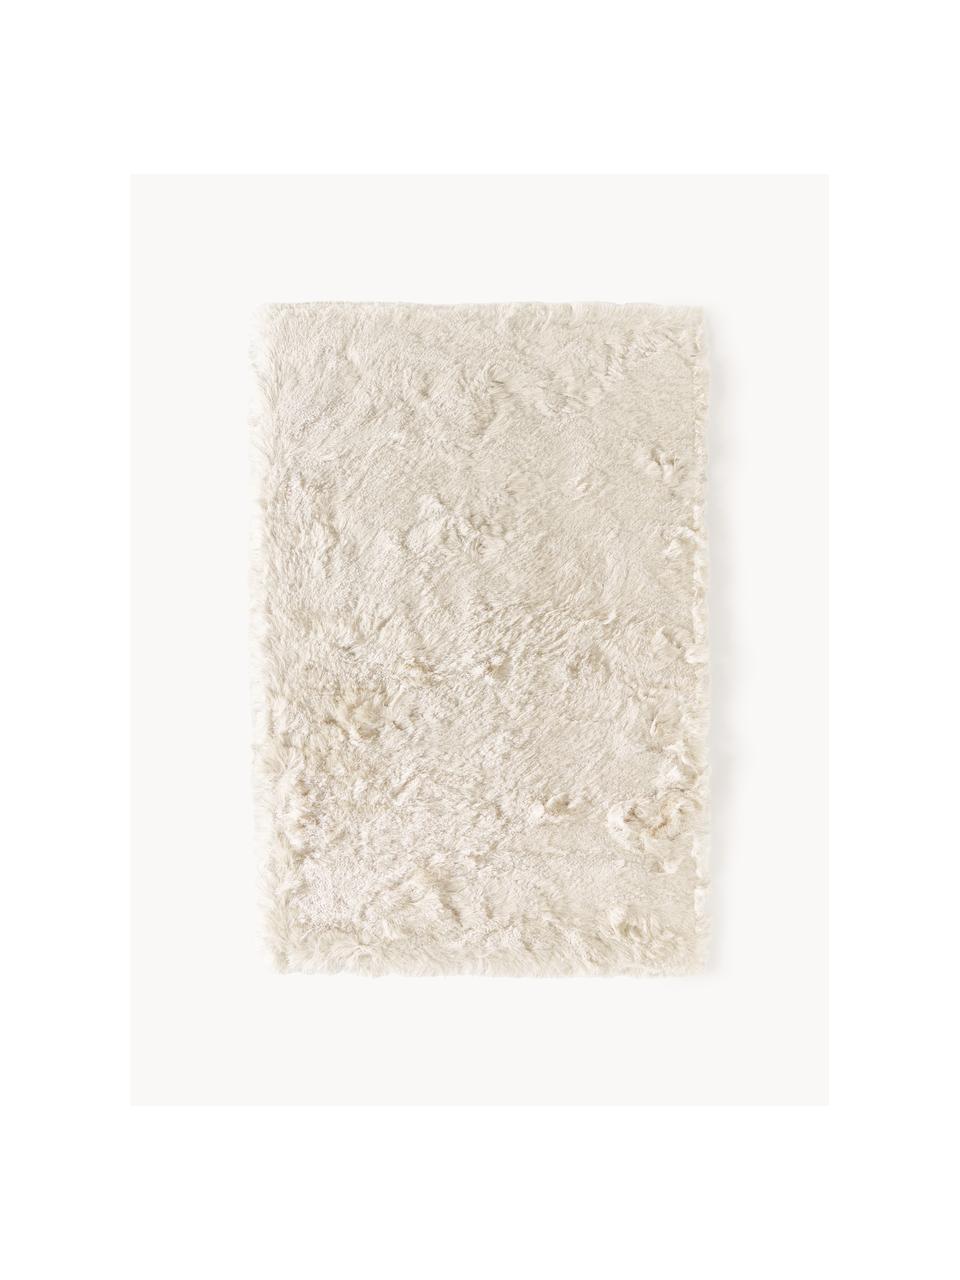 Glänzender Hochflor-Teppich Jimmy, Flor: 100% Polyester, Hellbeige, B 200 x L 300 cm (Größe L)